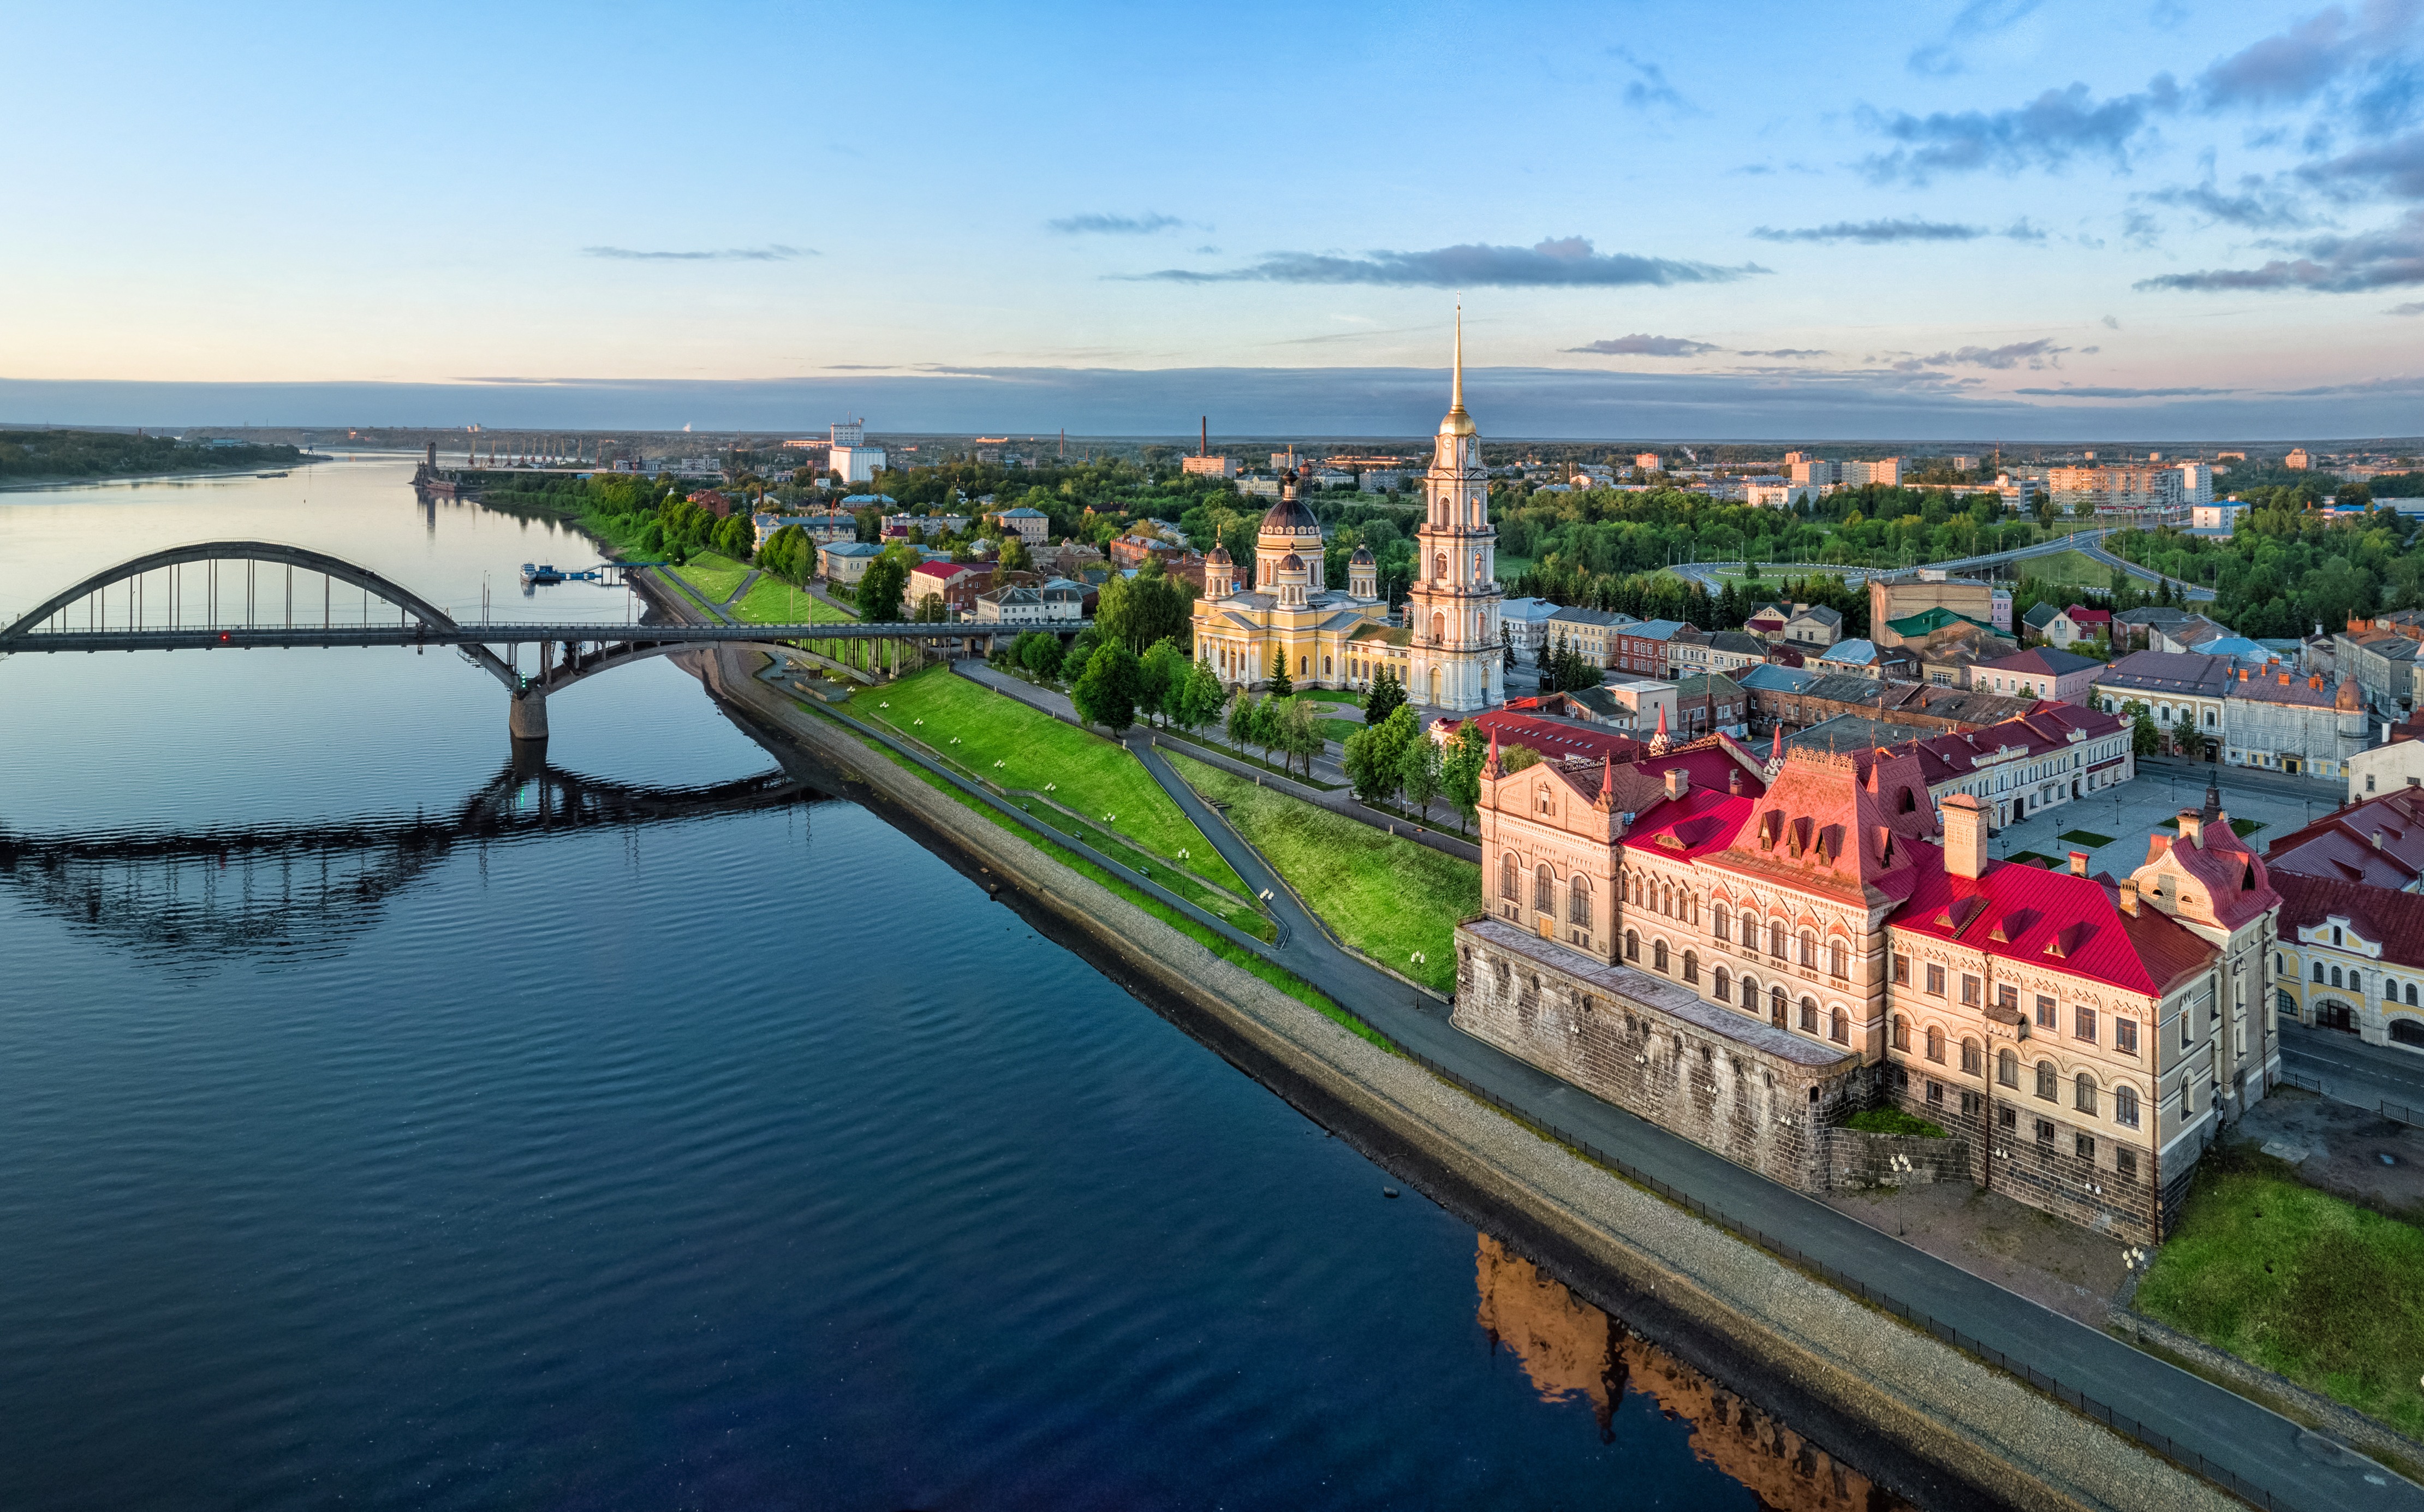 The Volga River